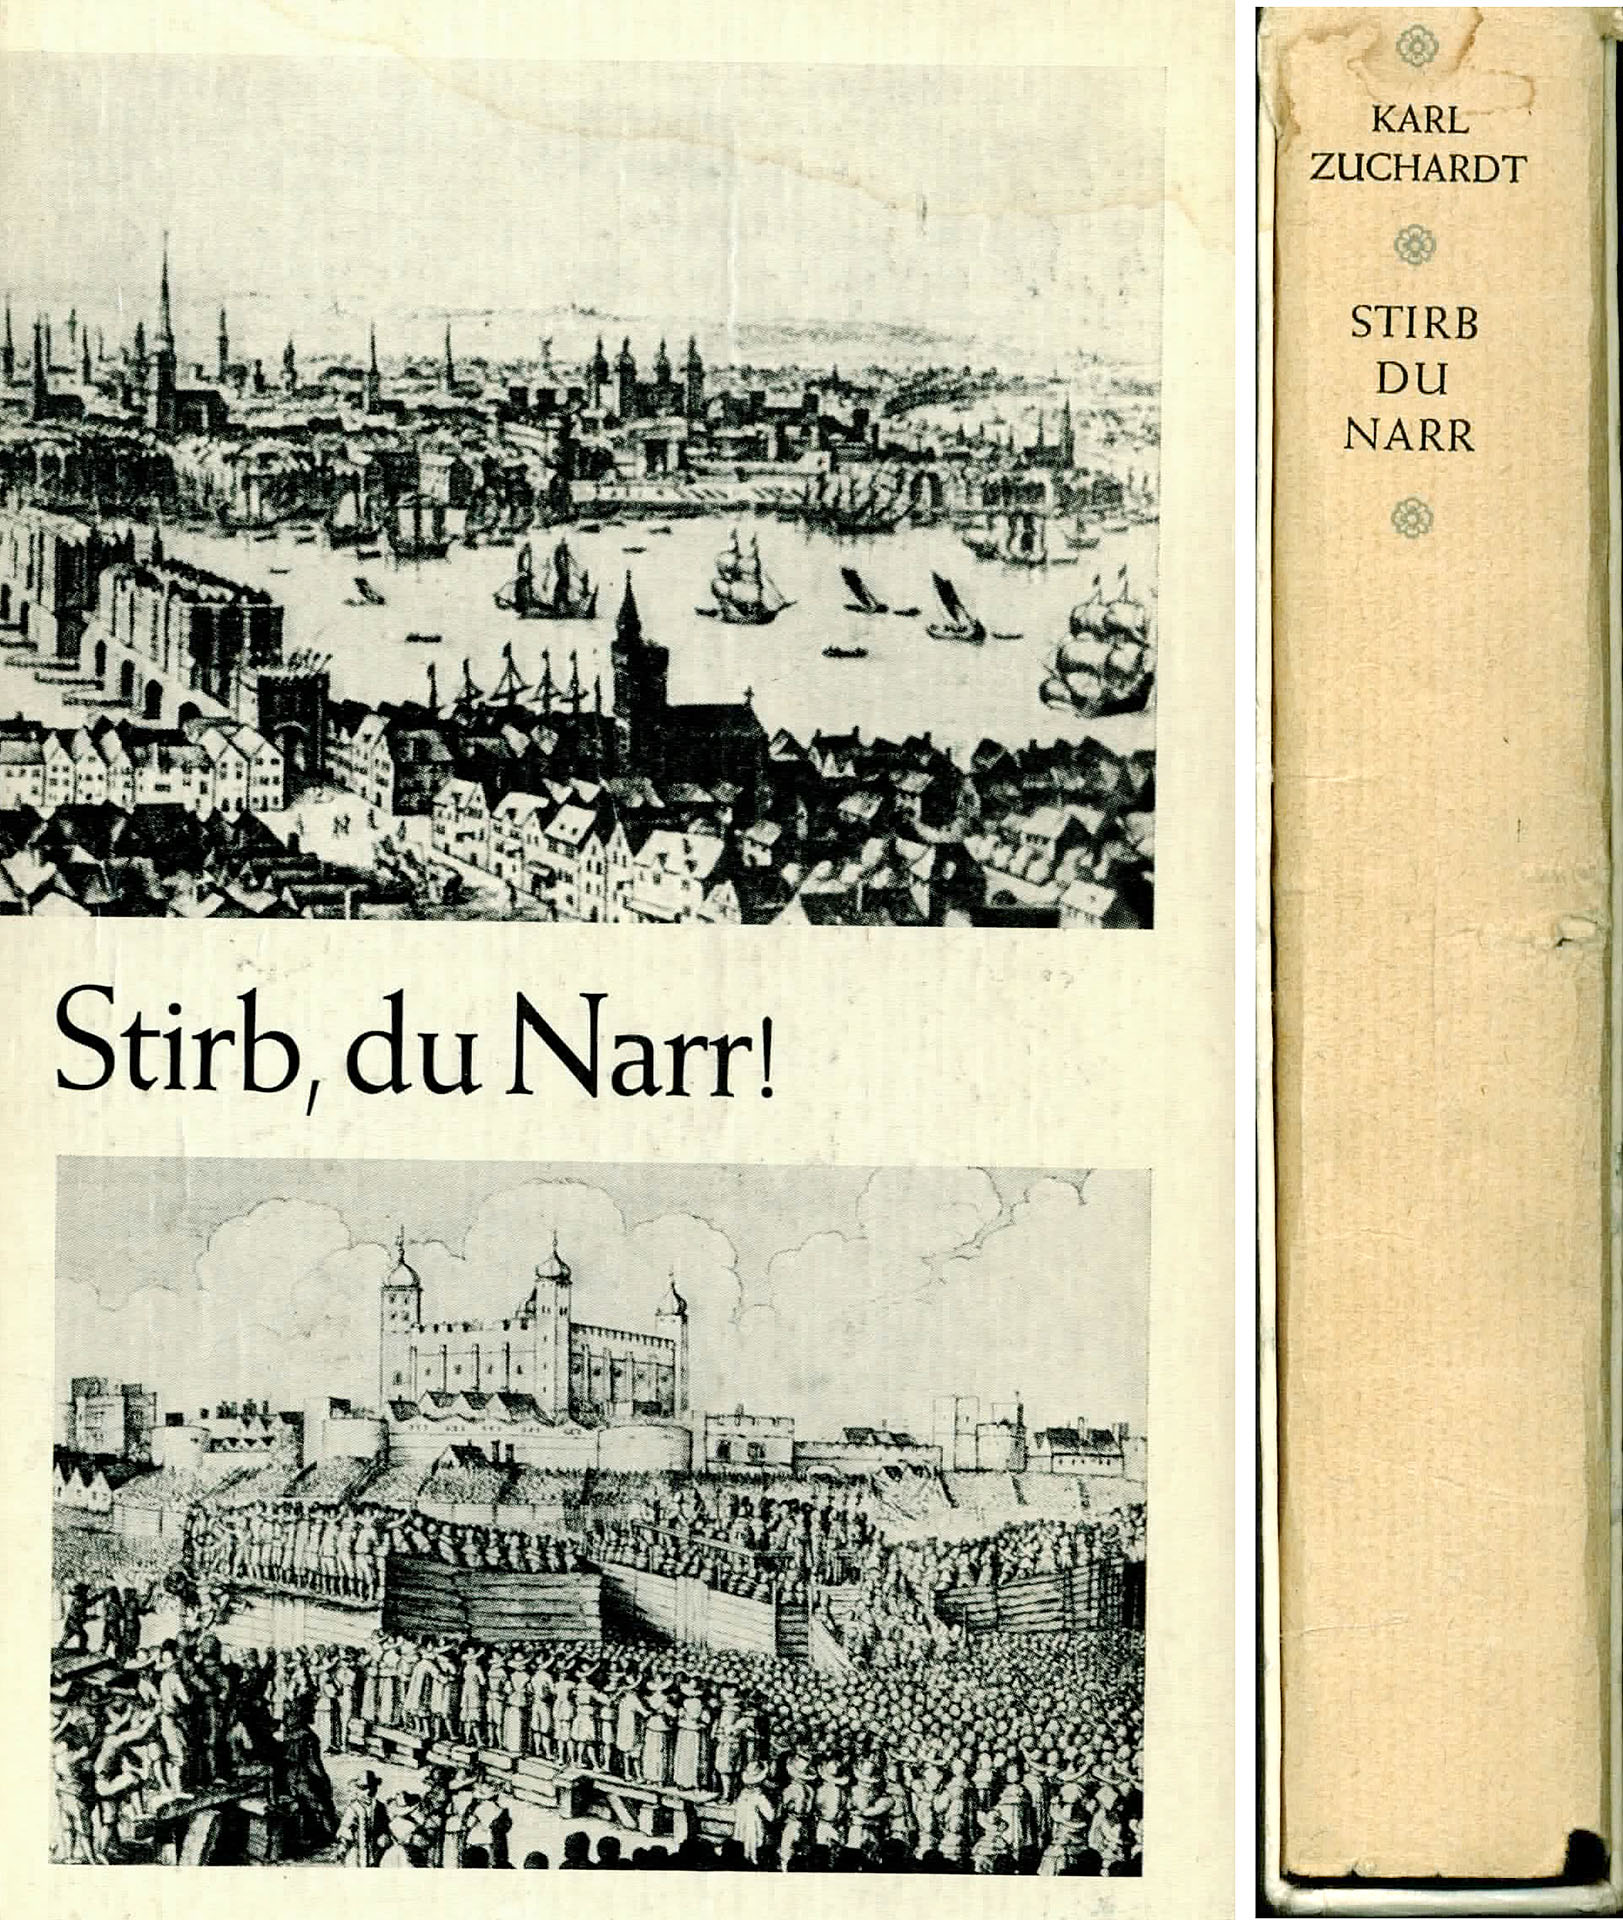 Stirb, du Narr - Zuchardt, Karl